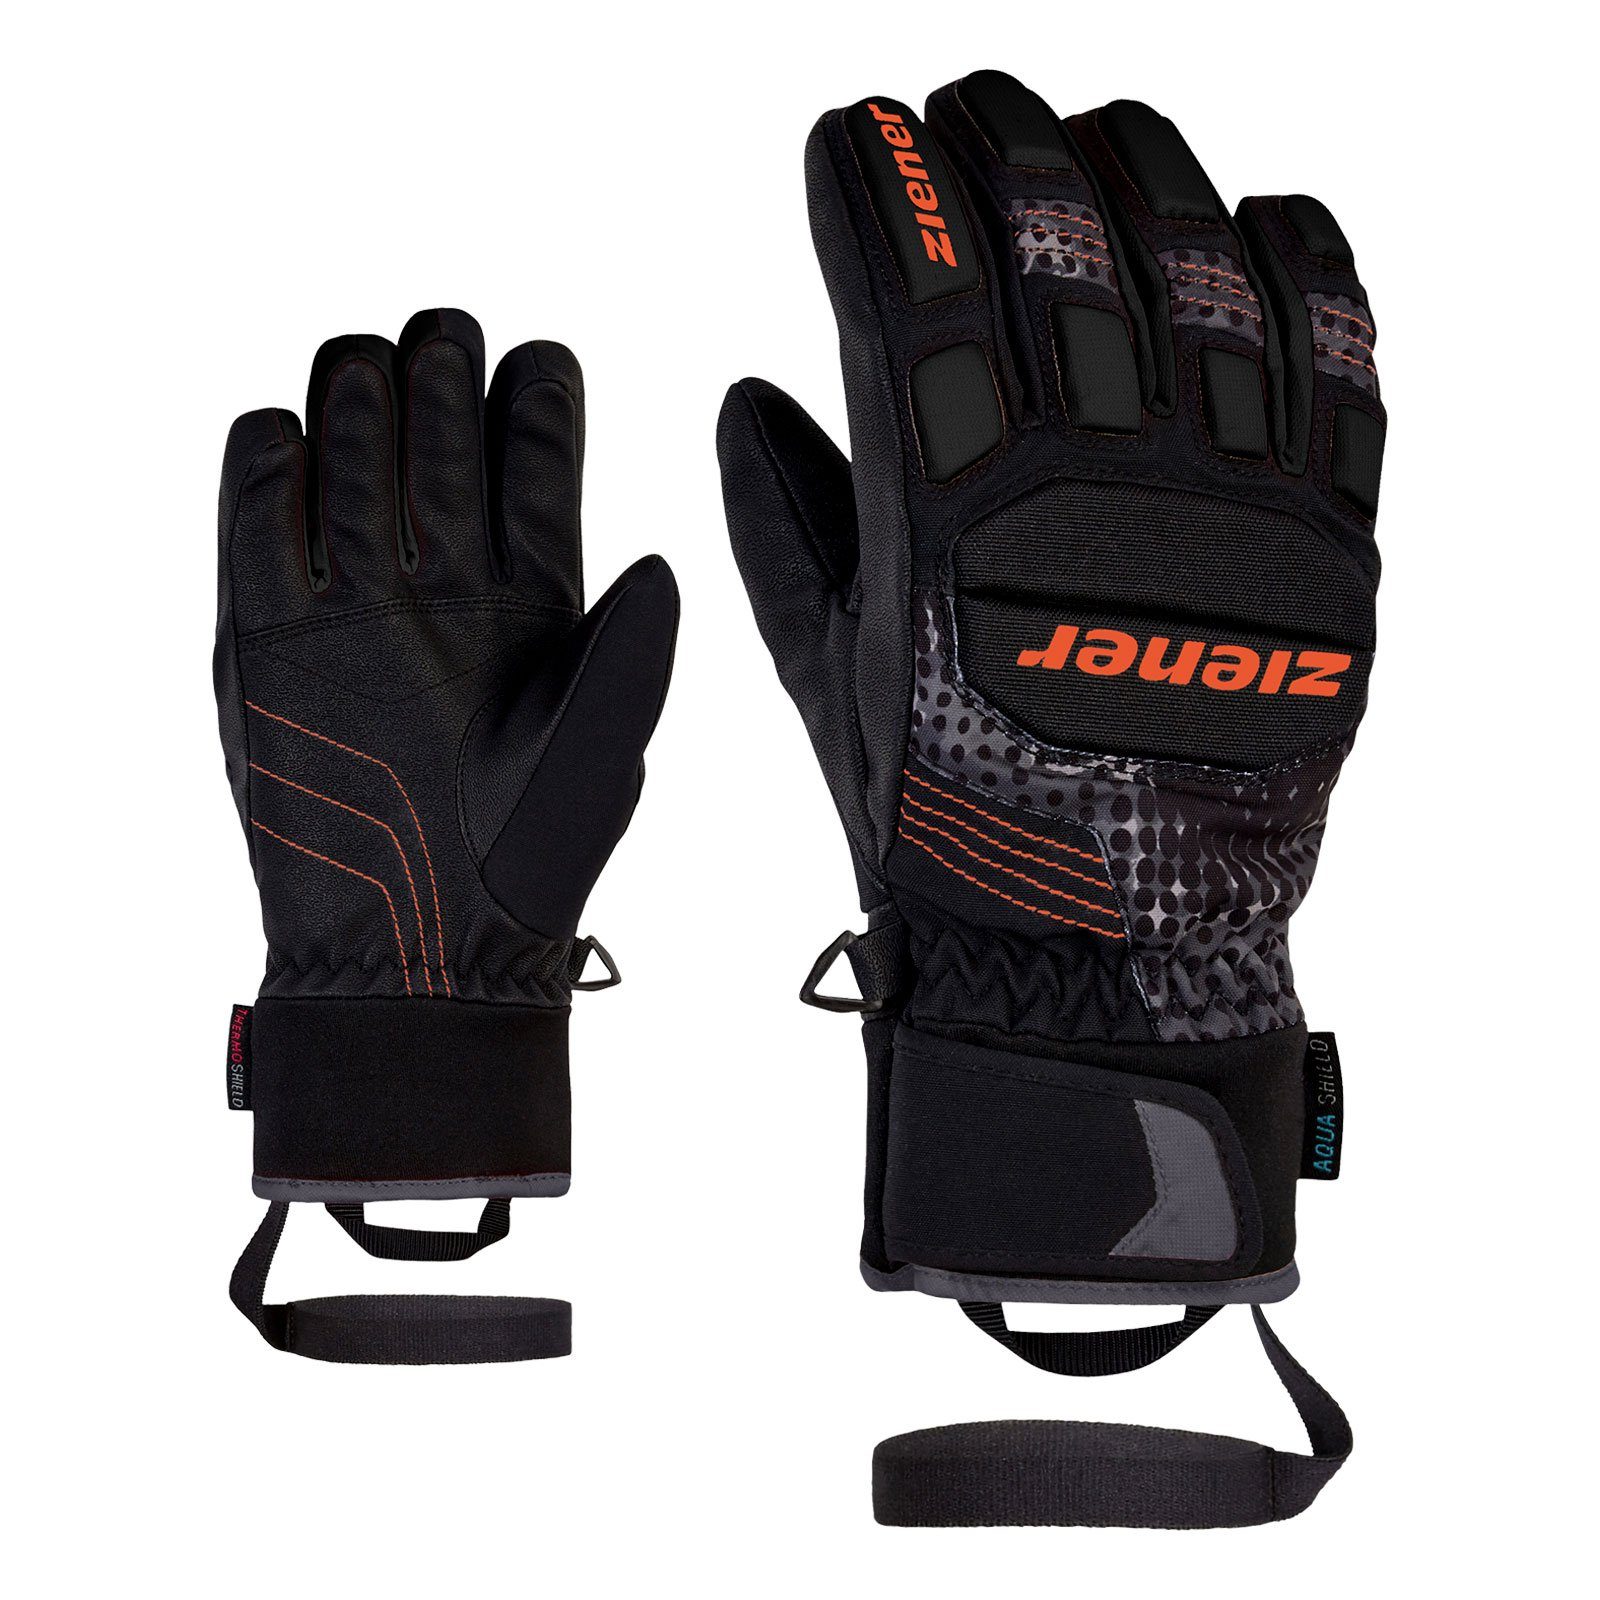 Ziener Skihandschuhe Luro AS PR Glove junior mit aufgedrucktem Markenlogo 12955 black orange pop